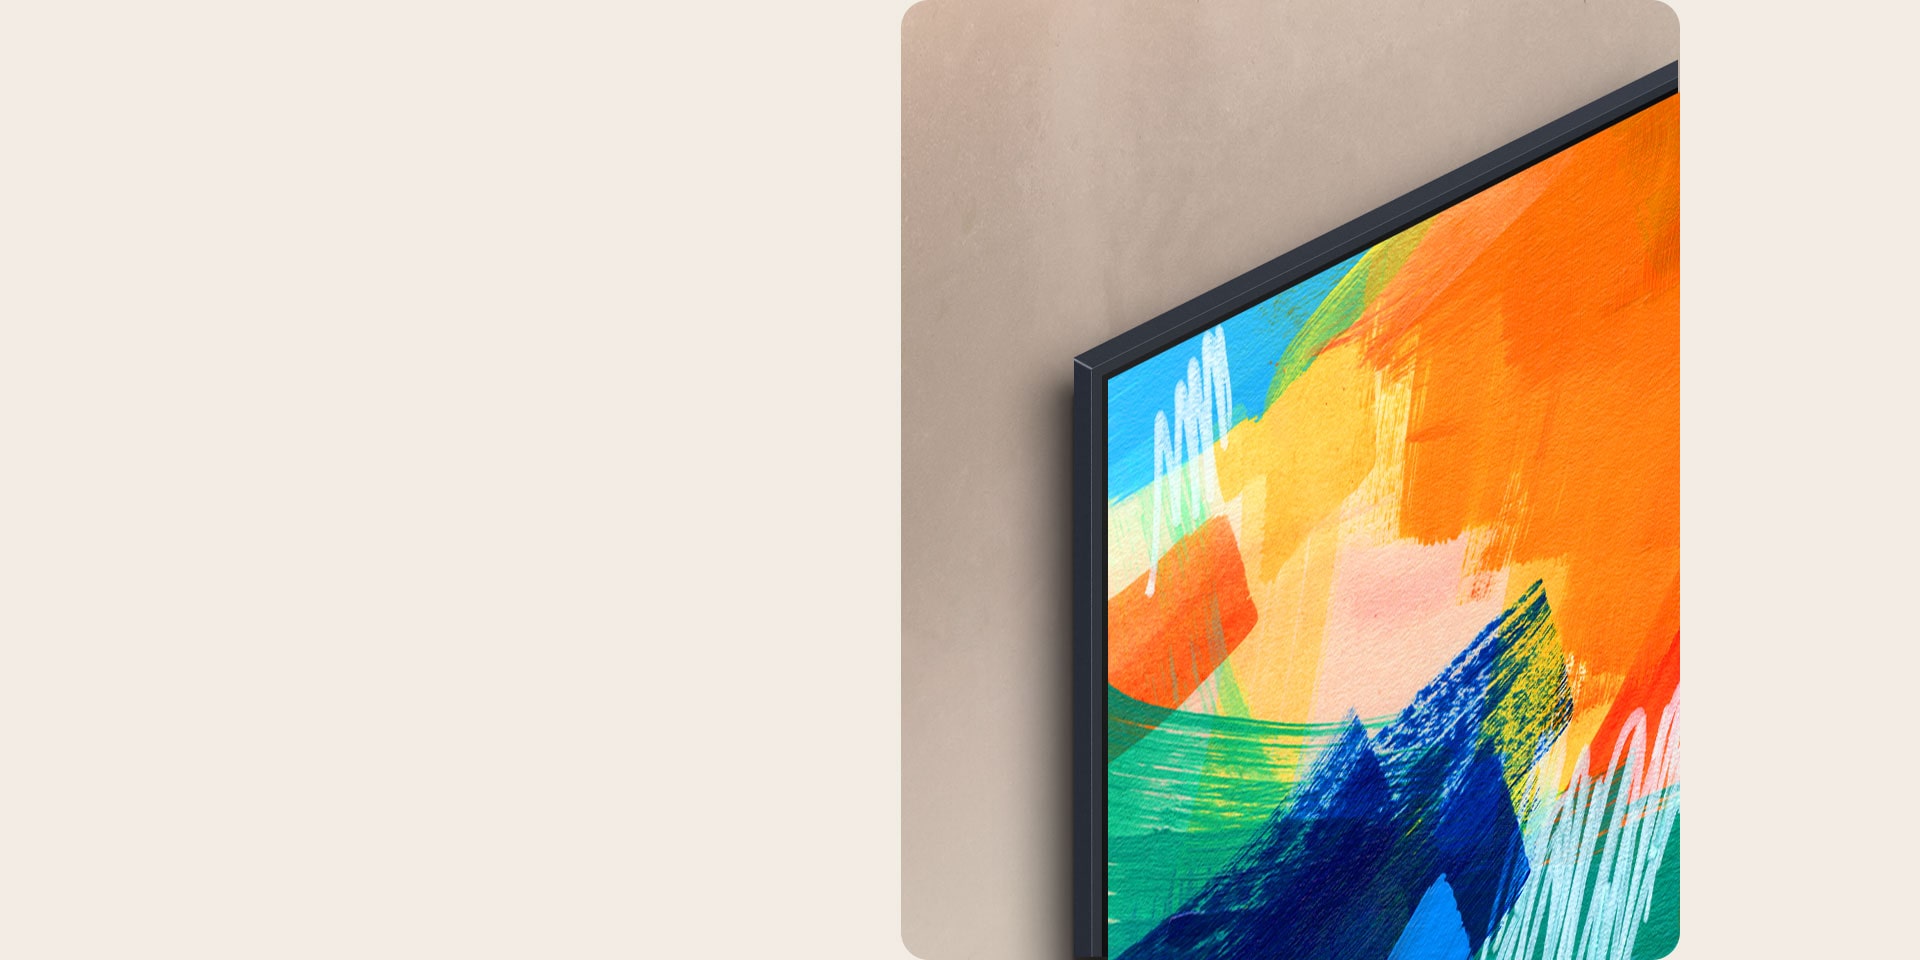 มุมซ้ายบนของ LG TV แสดงผลงานศิลปะหลากสีสัน และทีวีติดตั้งอยู่บนผนังโดยแทบไม่มีช่องว่าง